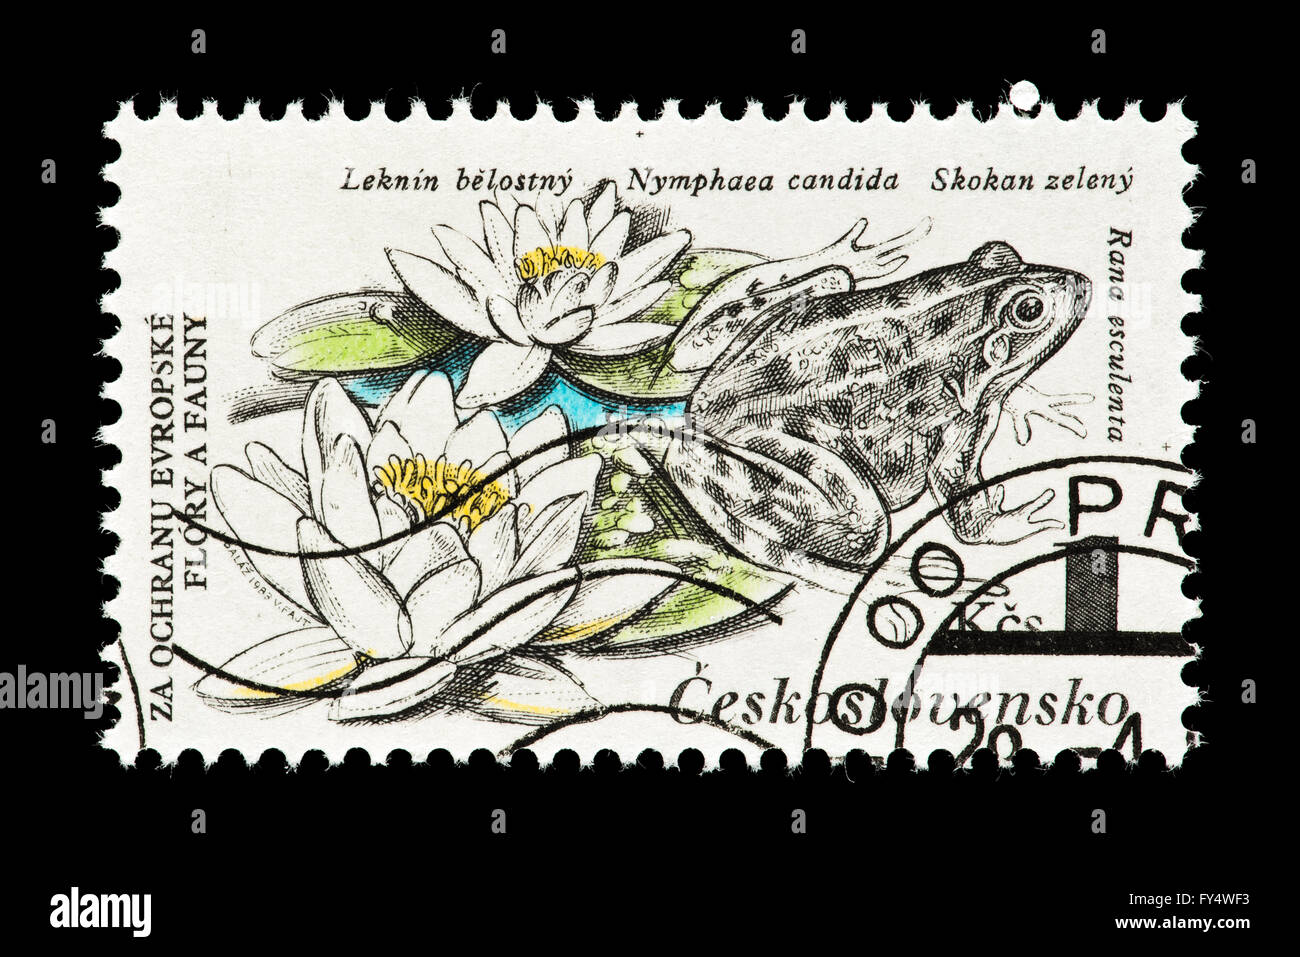 Timbre-poste de la Tchécoslovaquie représentant une grenouille commune comestibles (Rana esculenta) Nager dans l'eau nénuphars (Nymphaea candida) Banque D'Images